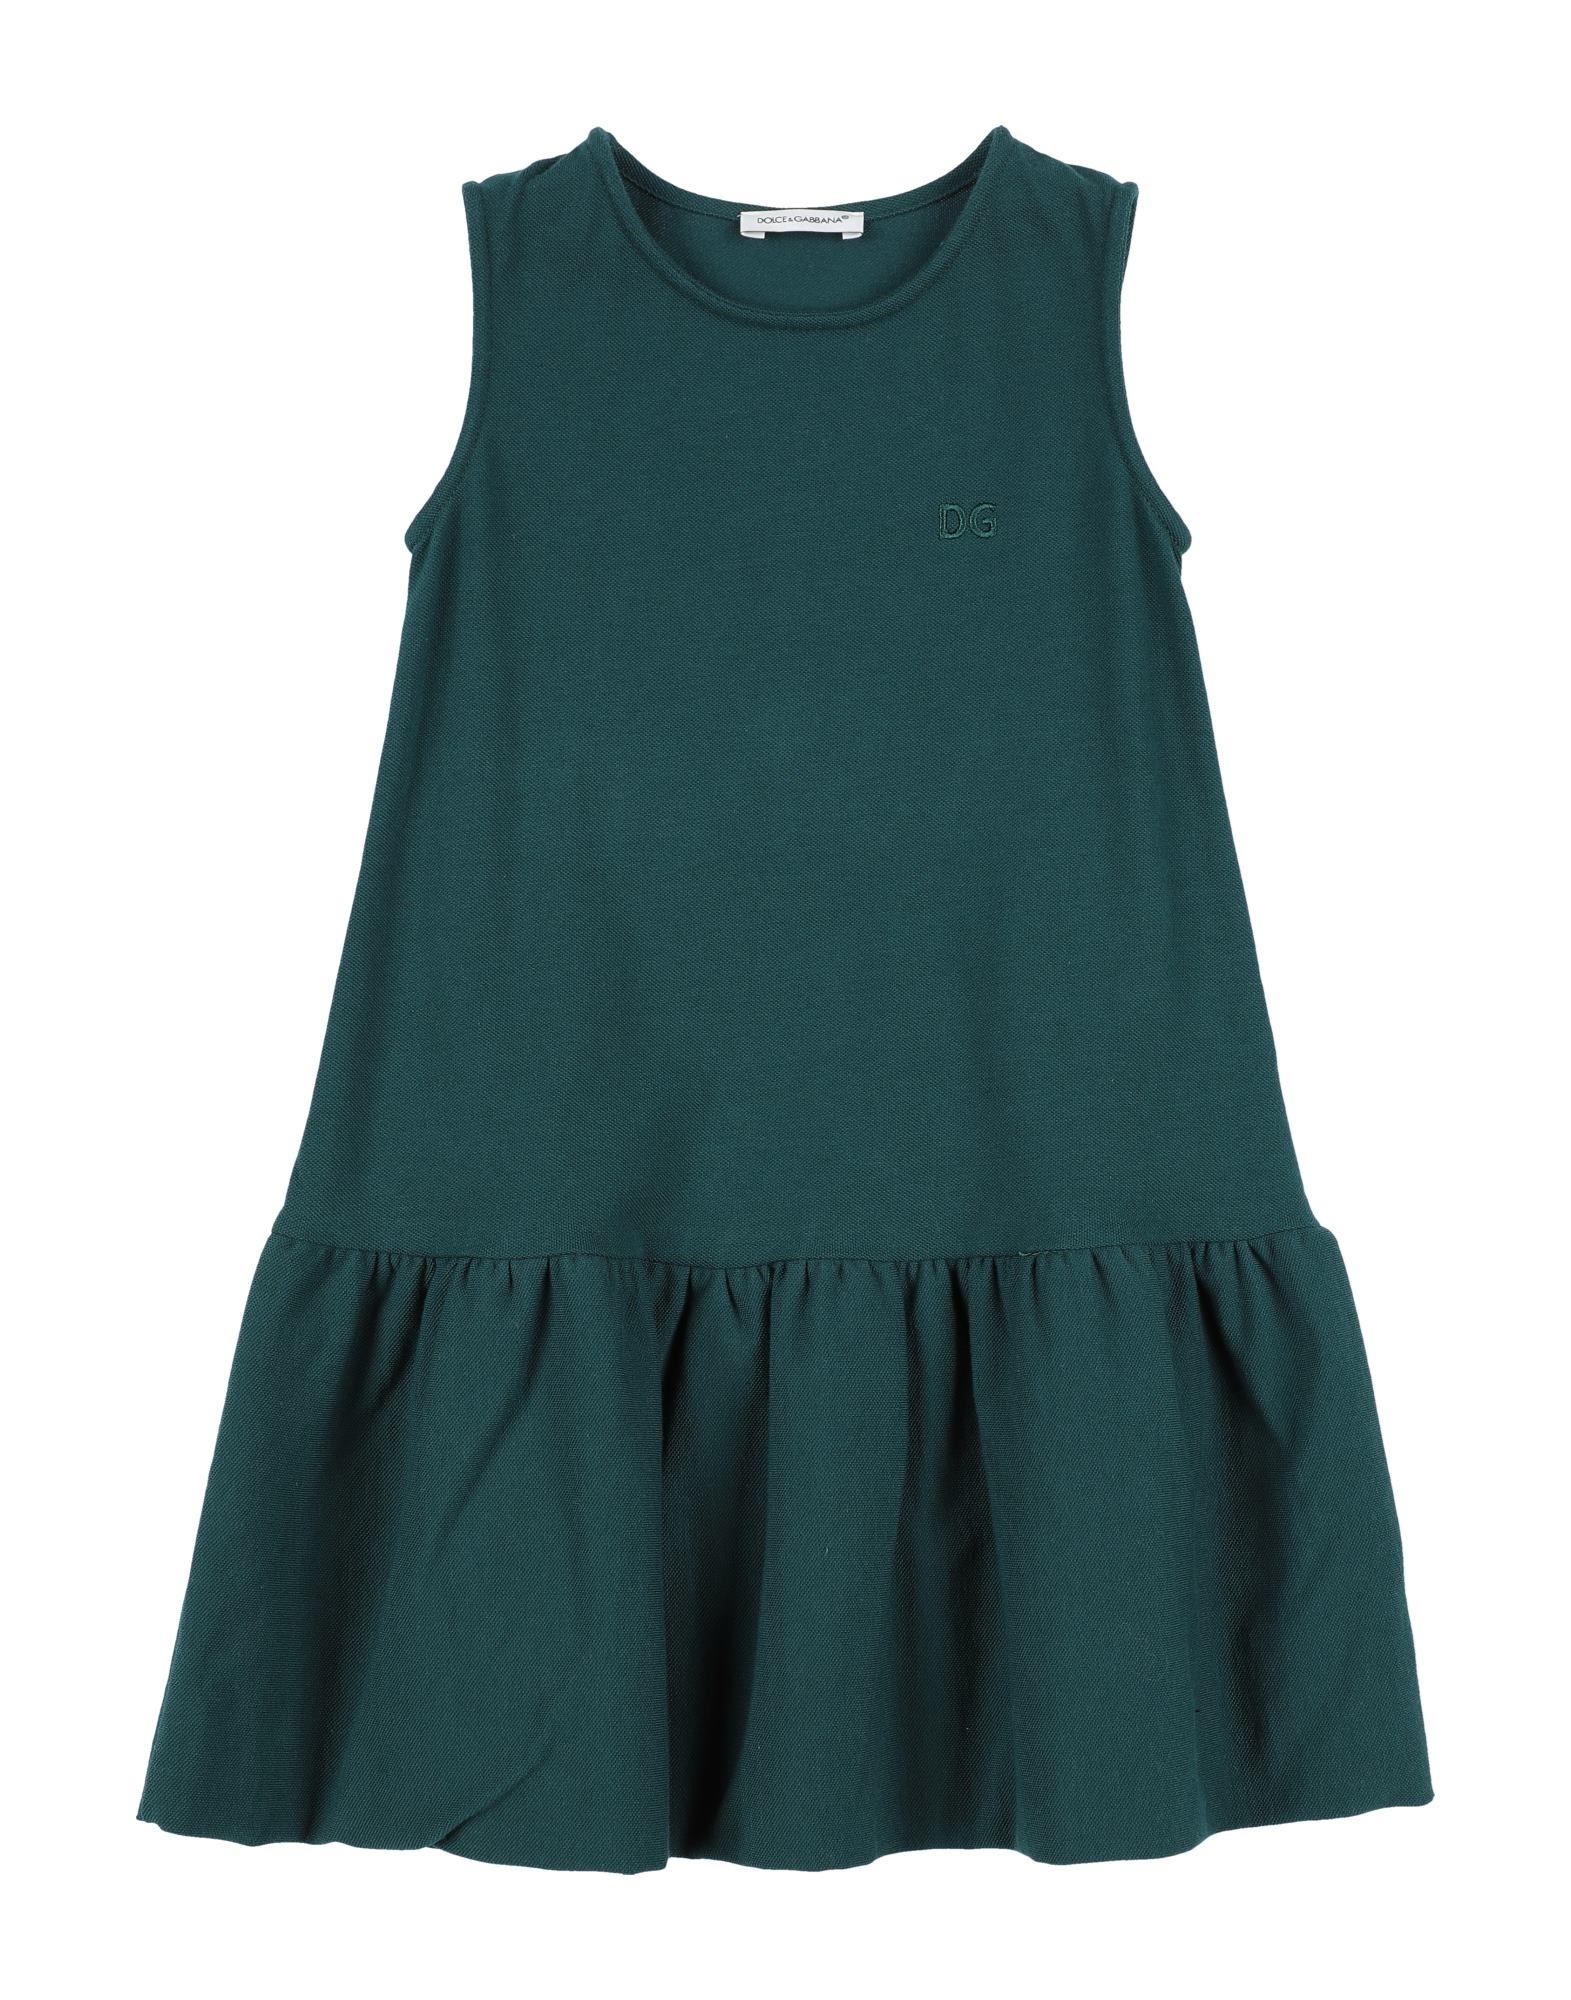 Dolce & Gabbana Kids' Dress In Emerald Green